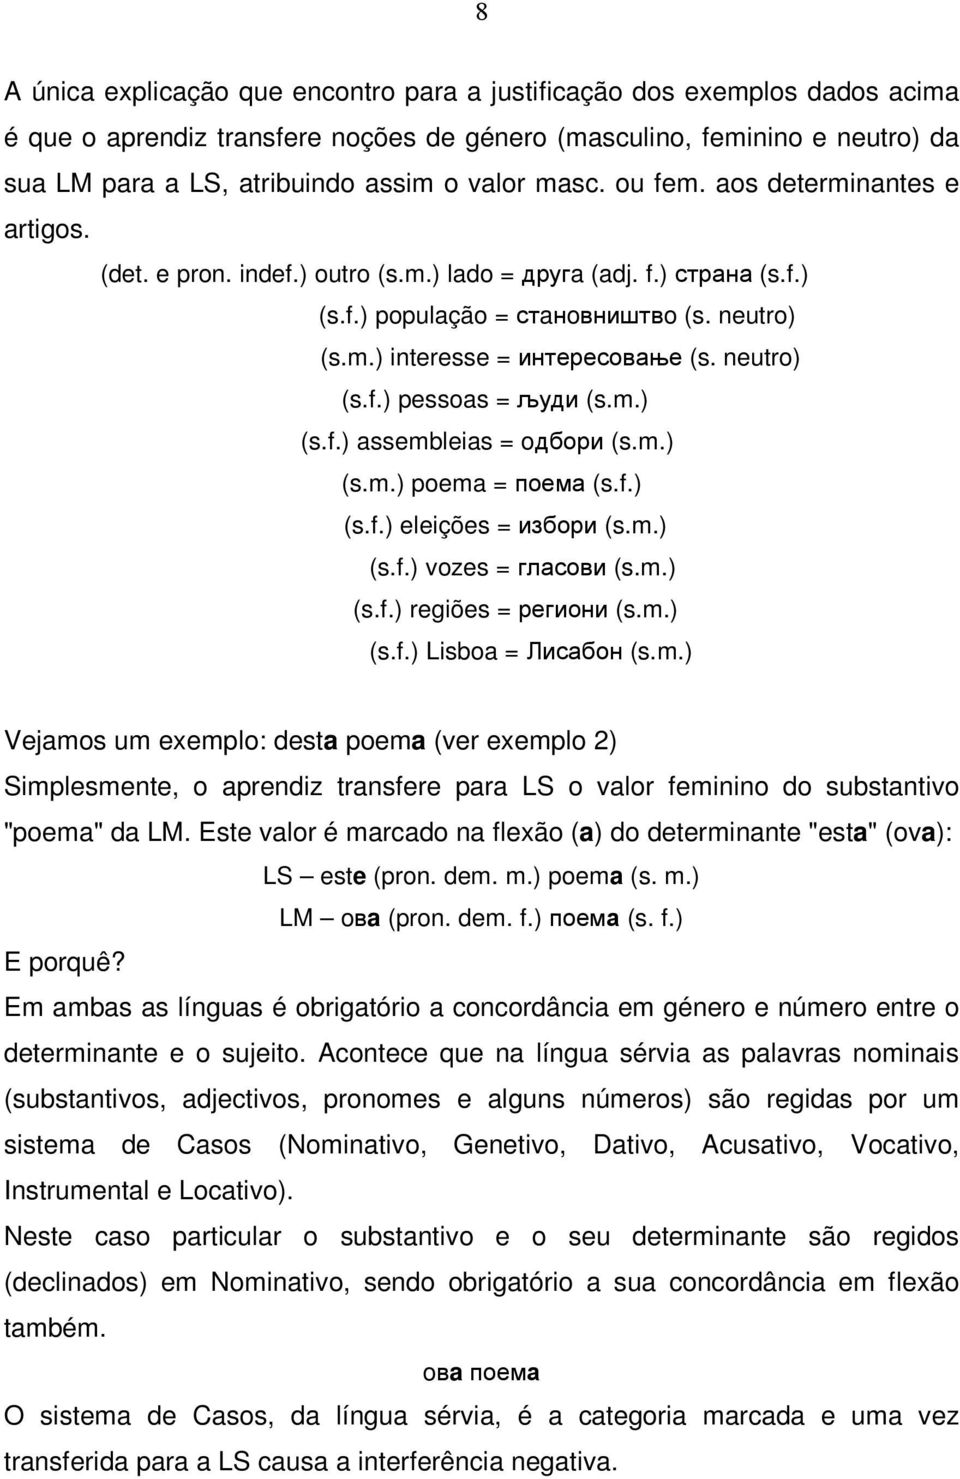 neutro) (s.f.) pessoas = људи (s.m.) (s.f.) assembleias = oдбори (s.m.) (s.m.) poema = поема (s.f.) (s.f.) eleições = избори (s.m.) (s.f.) vozes = гласови (s.m.) (s.f.) regiões = региони (s.m.) (s.f.) Lisboa = Лисабон (s.